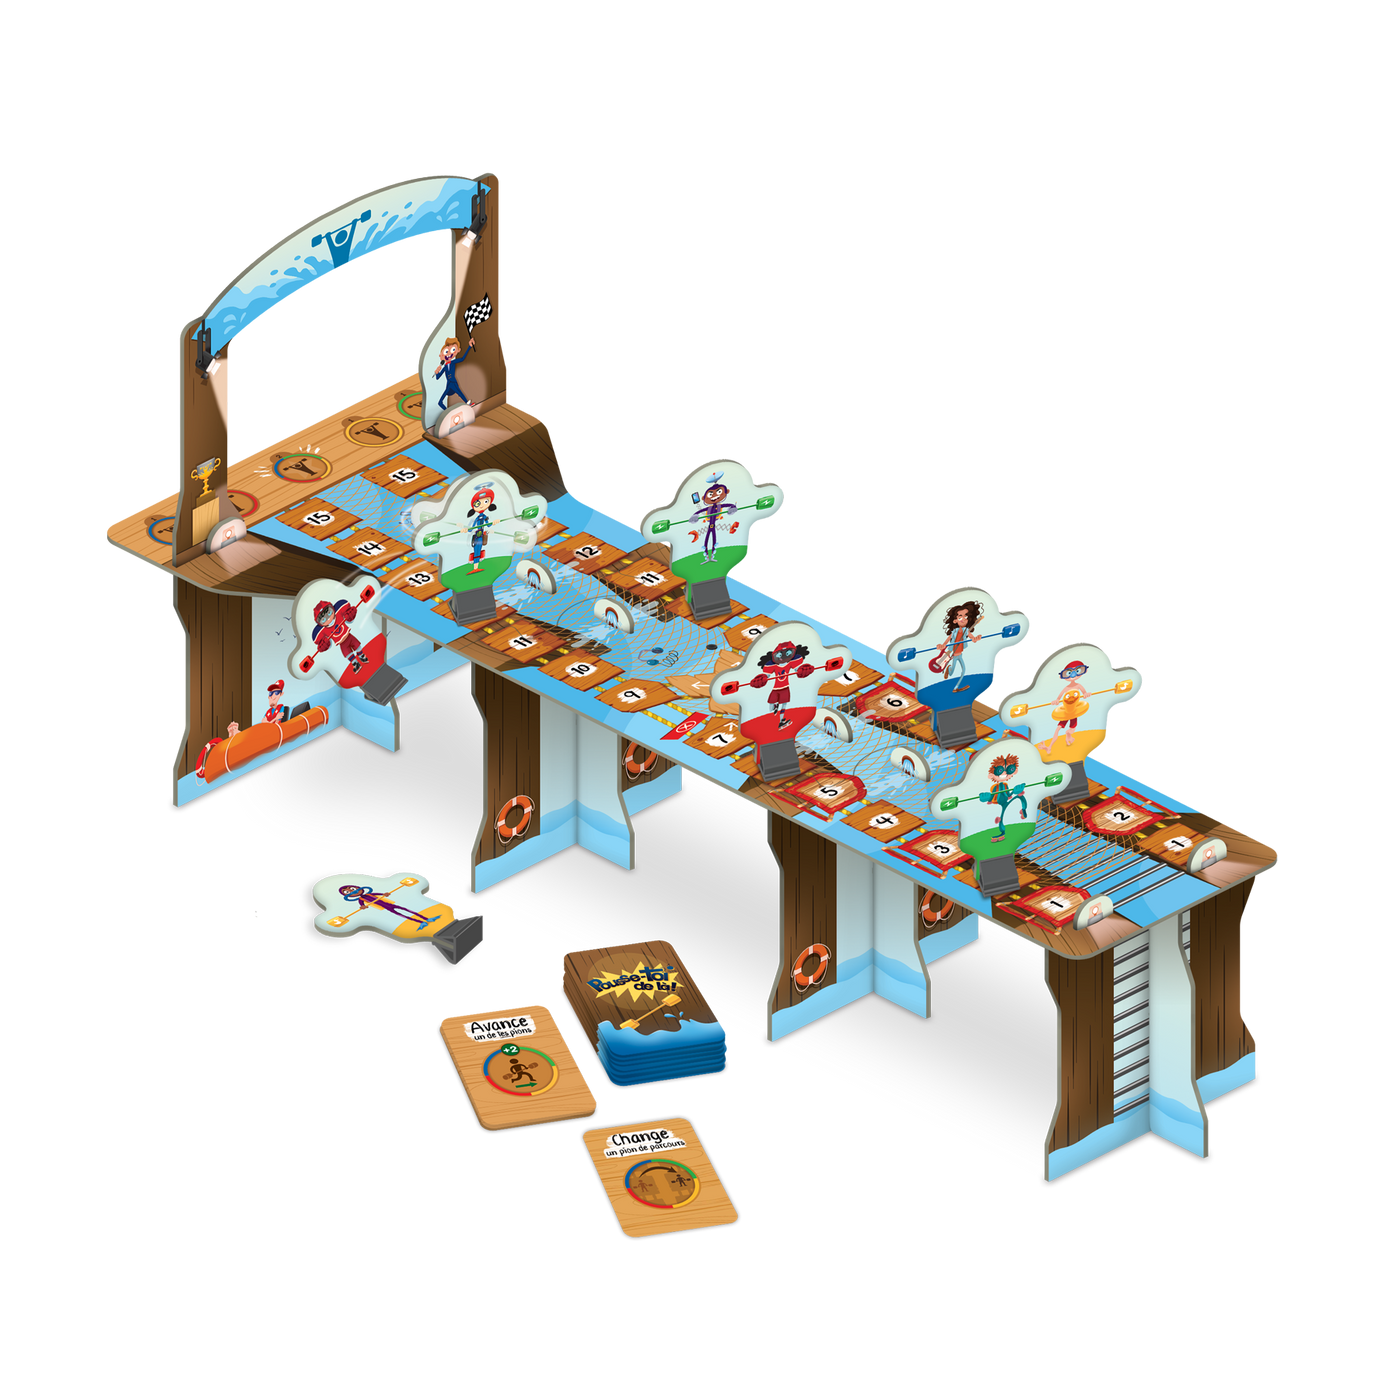 Pousse-toi de là! – Composantes : plateau de jeu assemblé (passerelle en 3D), pions-personnages des différentes couleurs, cartes-actions